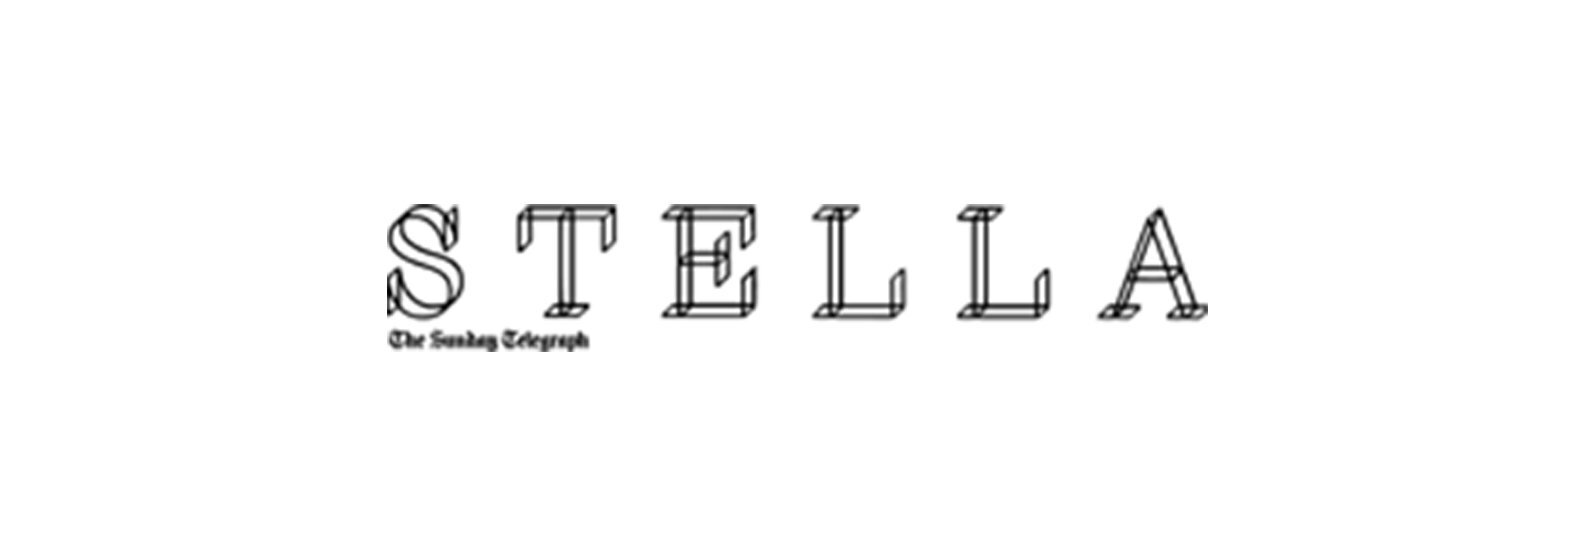 Stella_Magazine_Logo_1600x.jpg